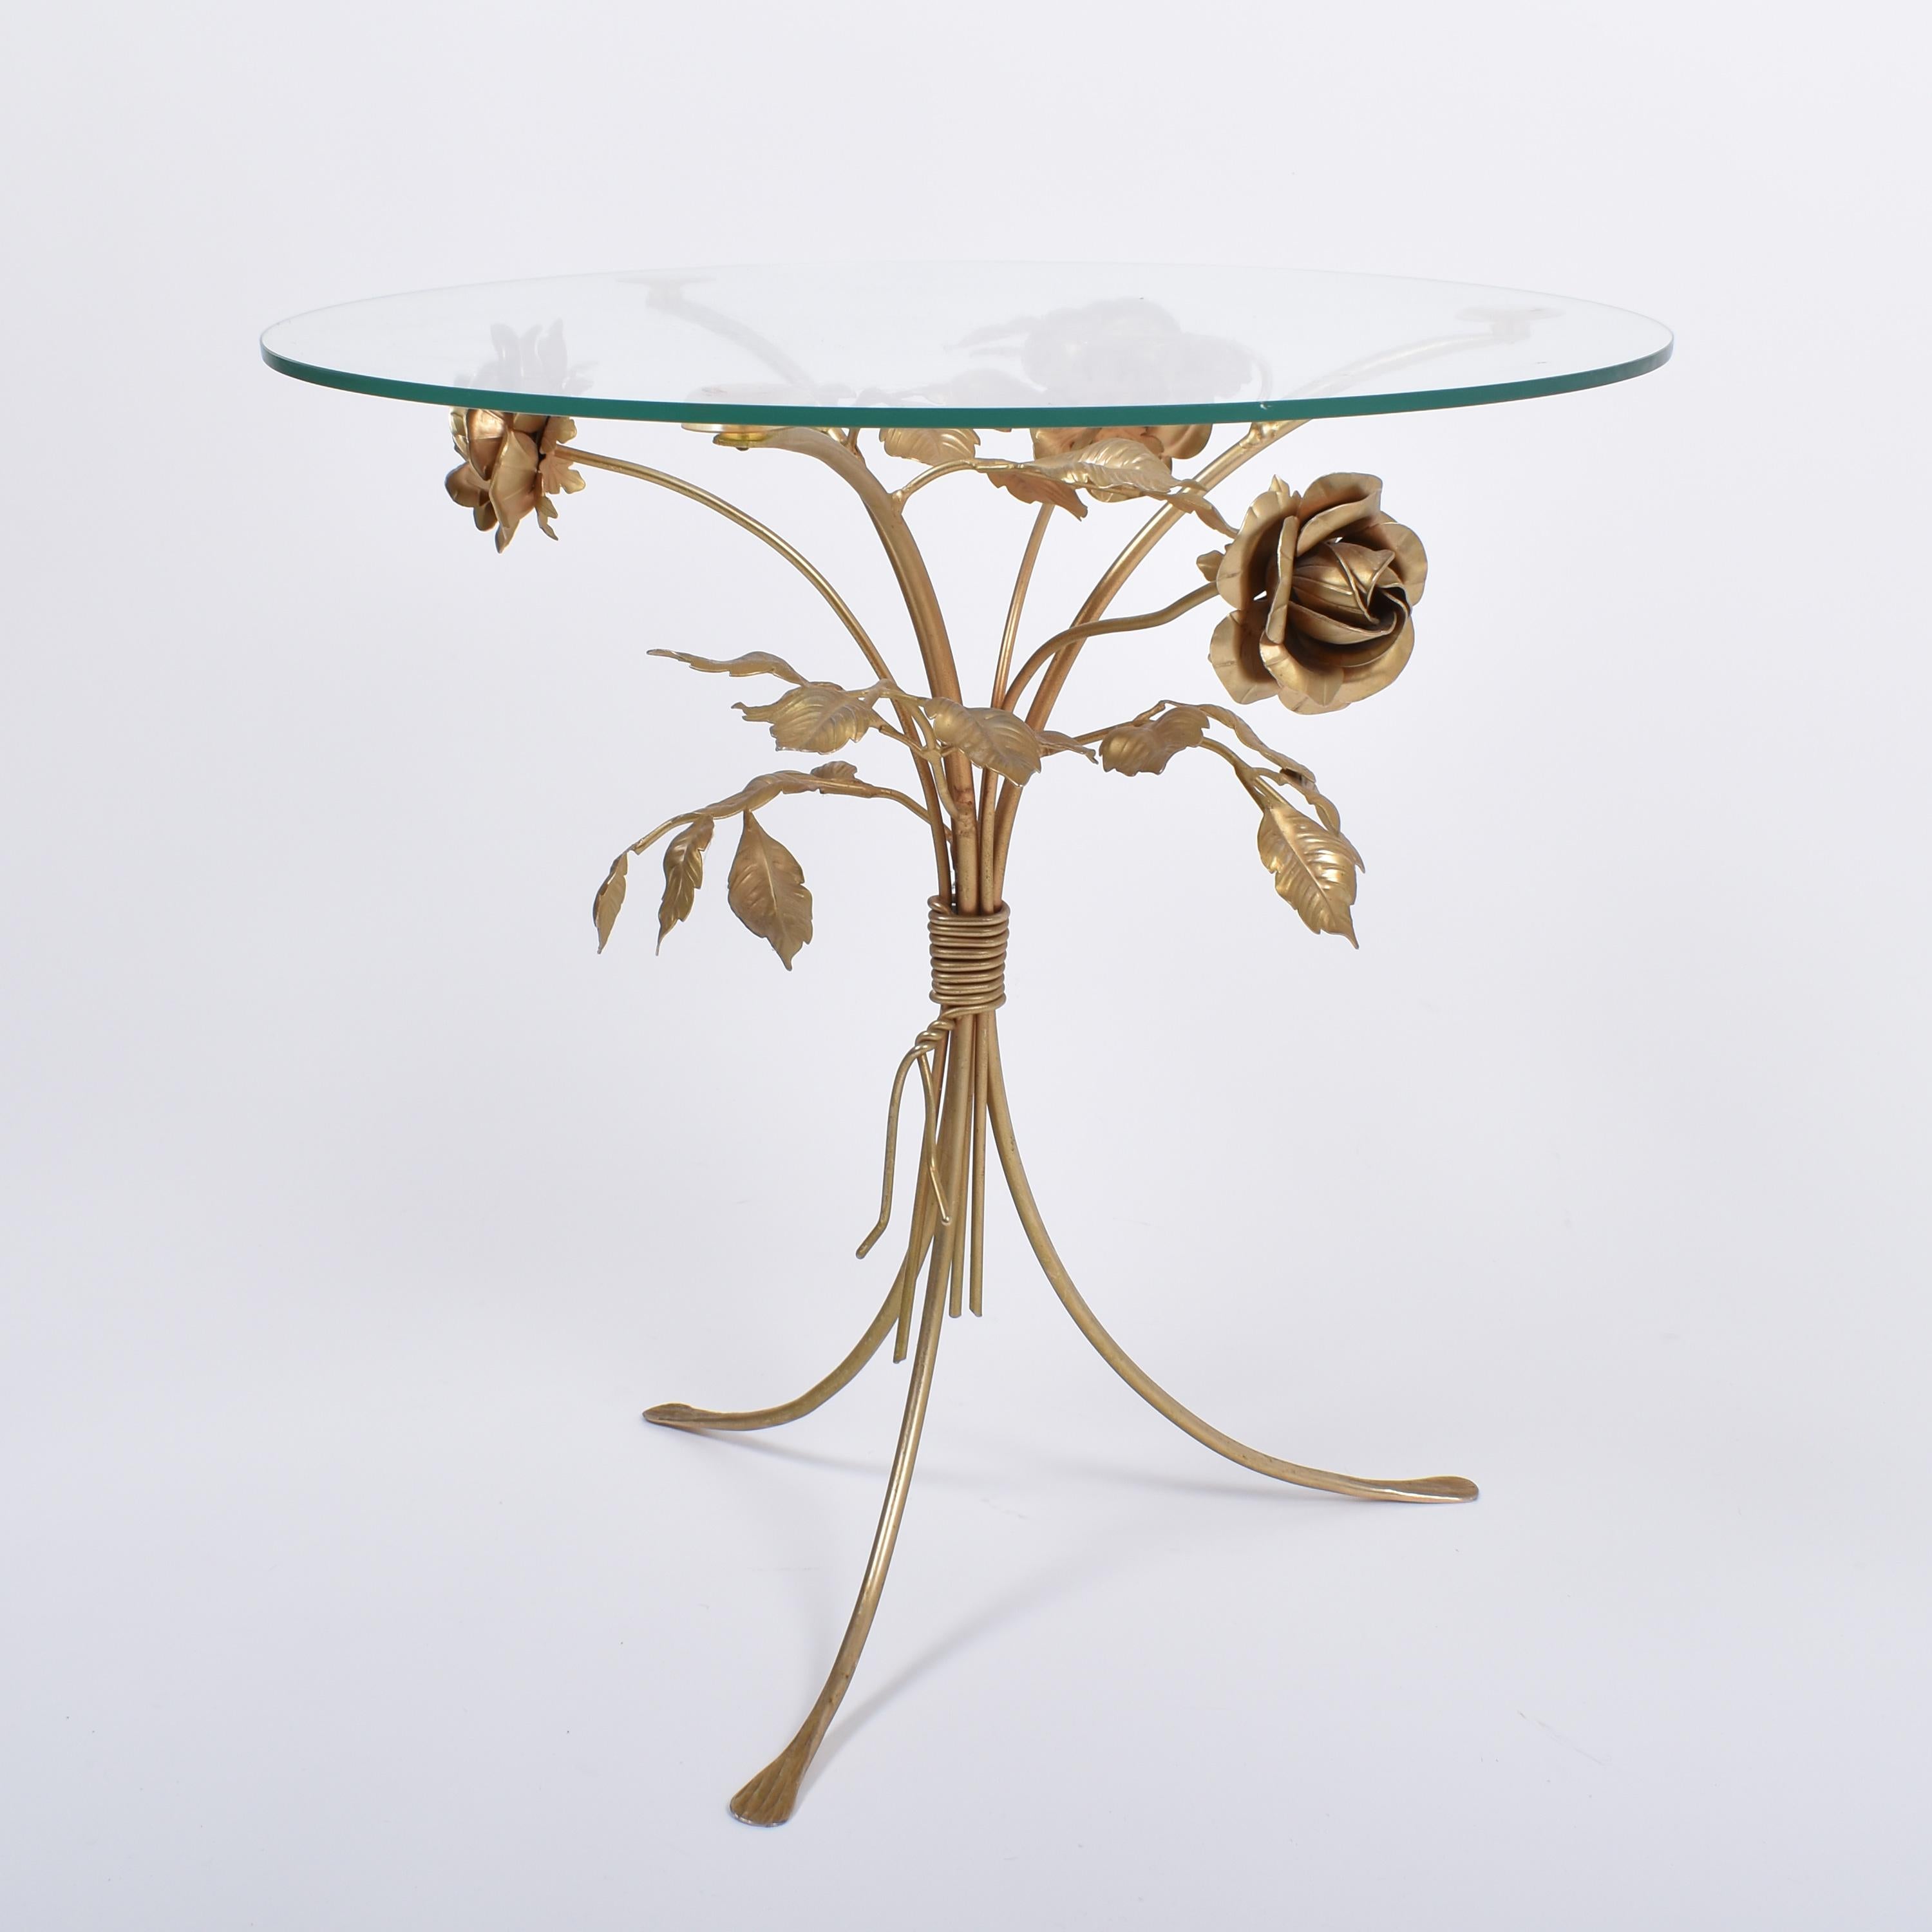 Délicate table florale, avec des roses et des feuilles dorées.
Ce guéridon est l'œuvre du célèbre Hand Kögl, maître allemand du mobilier floral.
Il est en très bon état, avec un plateau en verre.